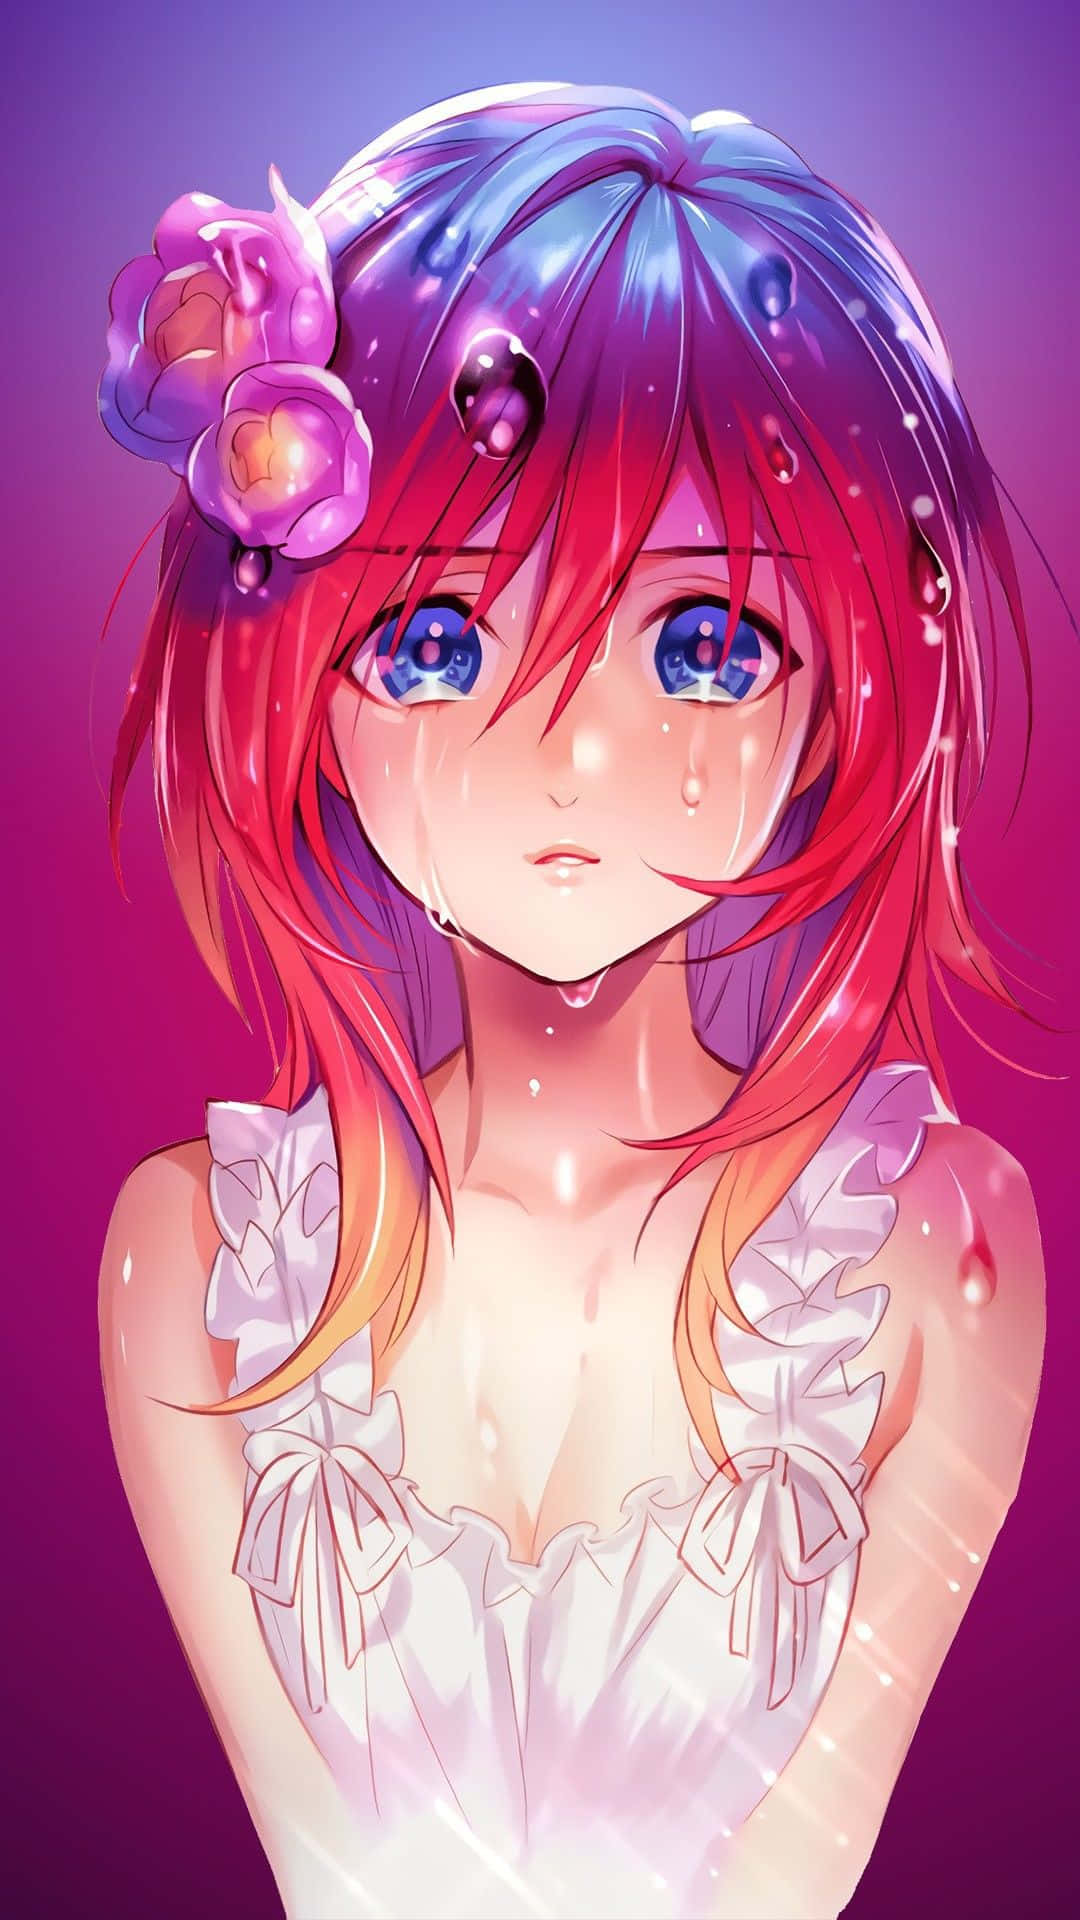 Tränender Traurigkeit Rollen Über Das Gesicht Eines Anime Wallpaper